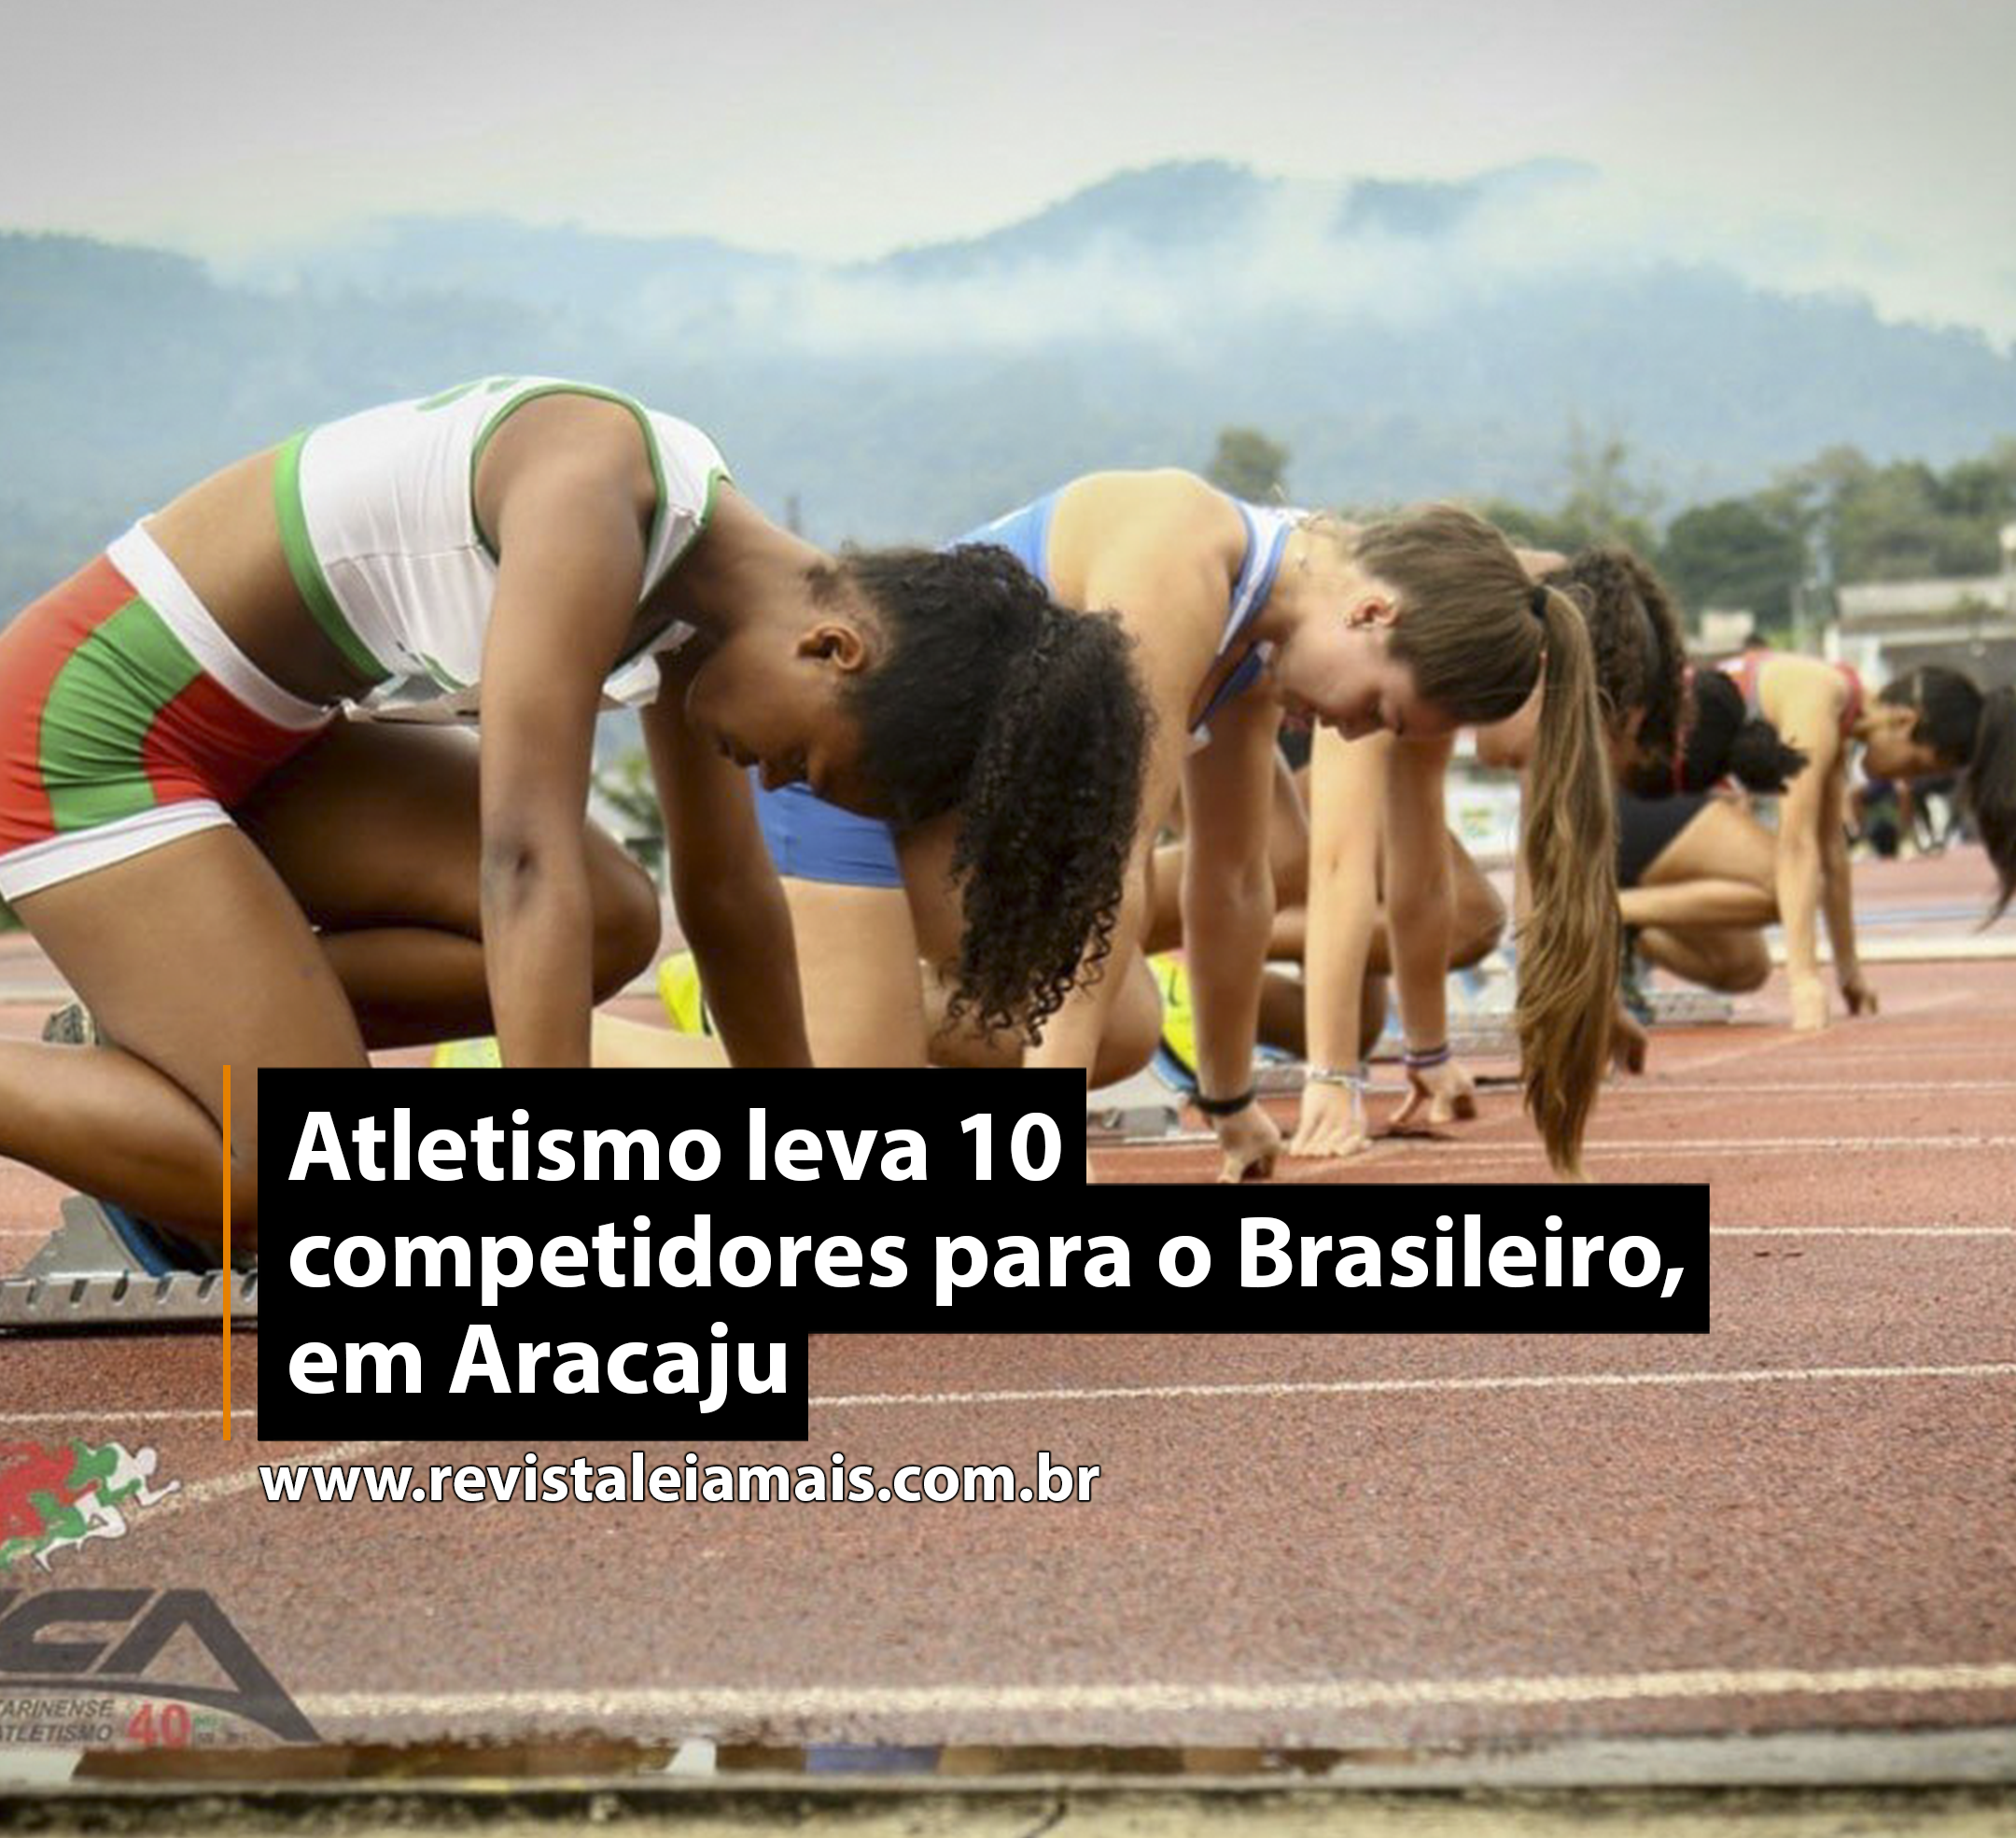 Atletismo leva 10 competidores para o Brasileiro, em Aracaju